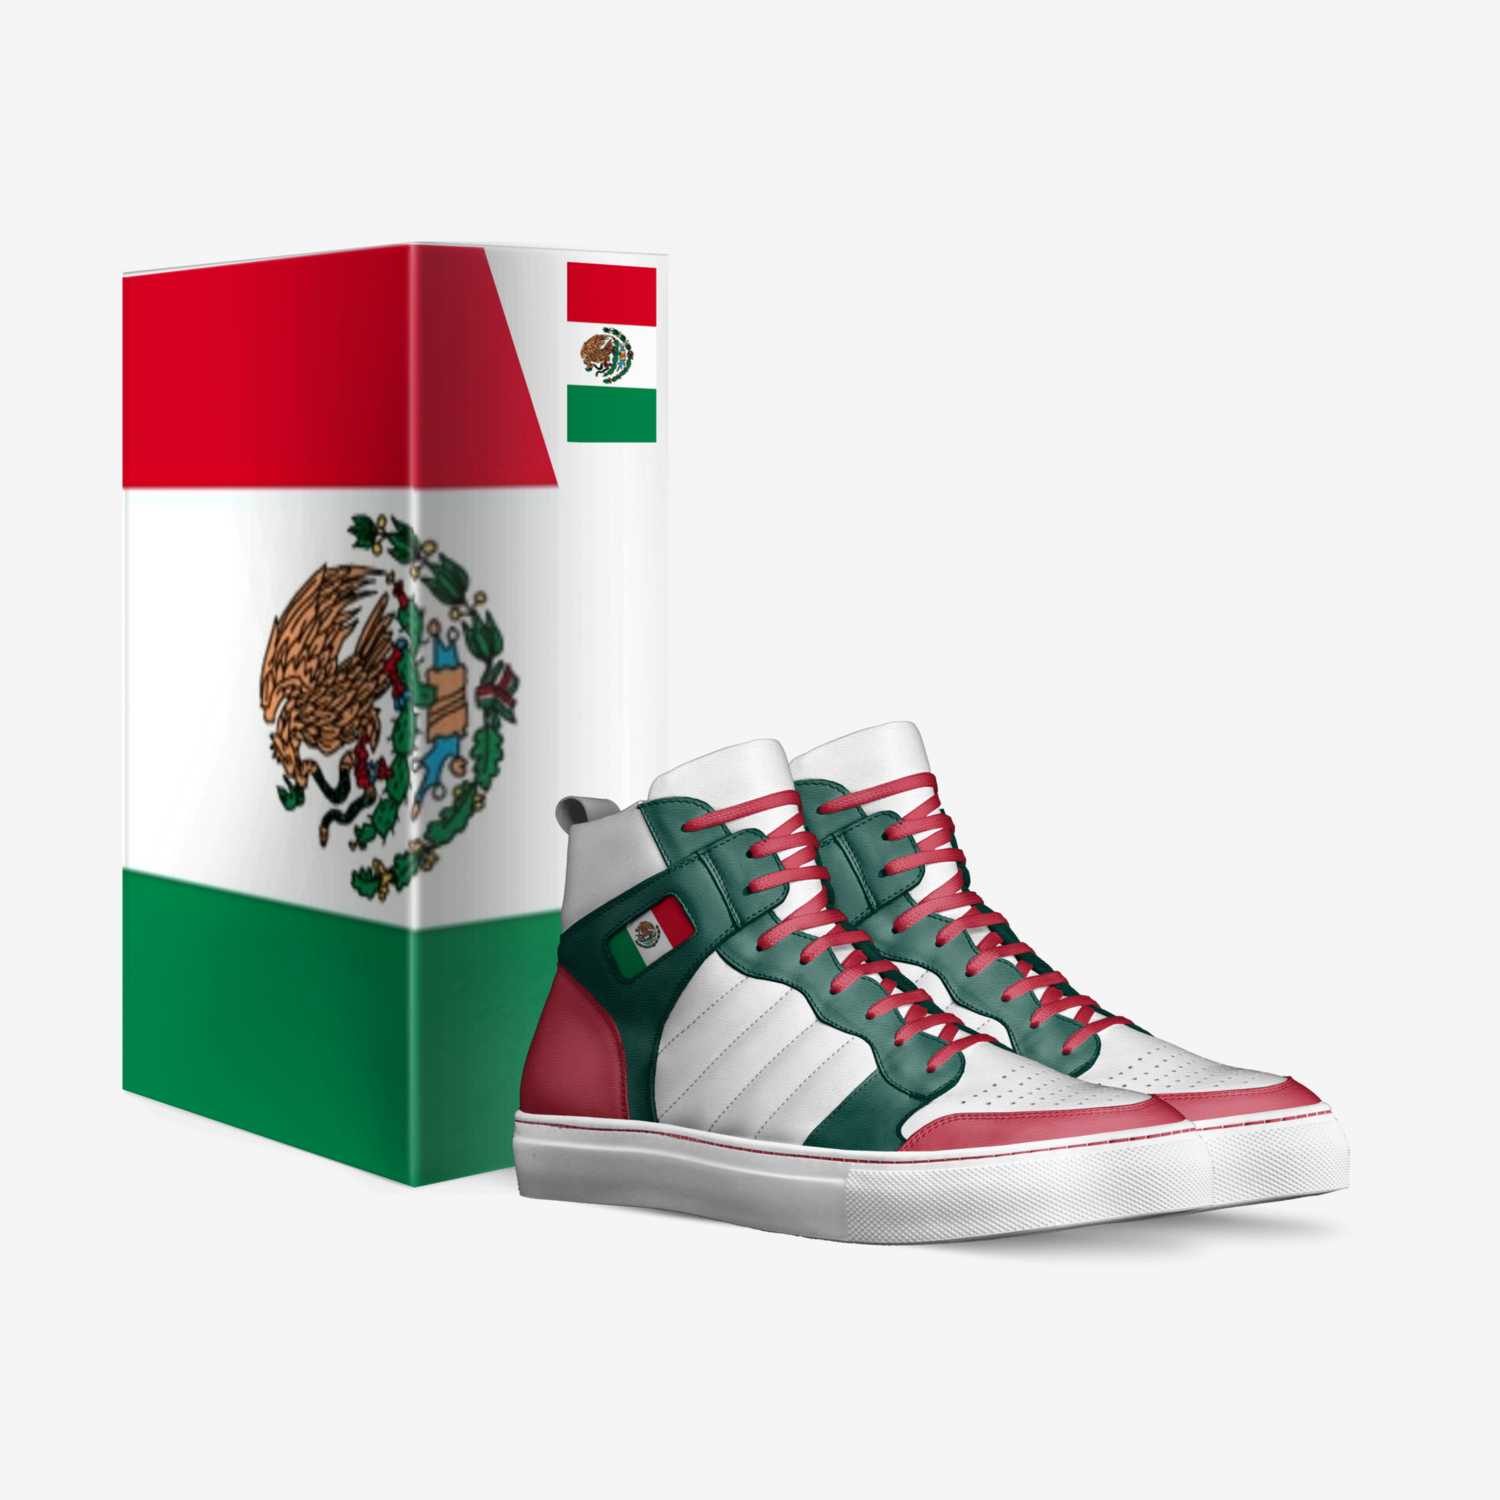 Mexijo custom made in Italy shoes by Carolina A. Perez | Box view